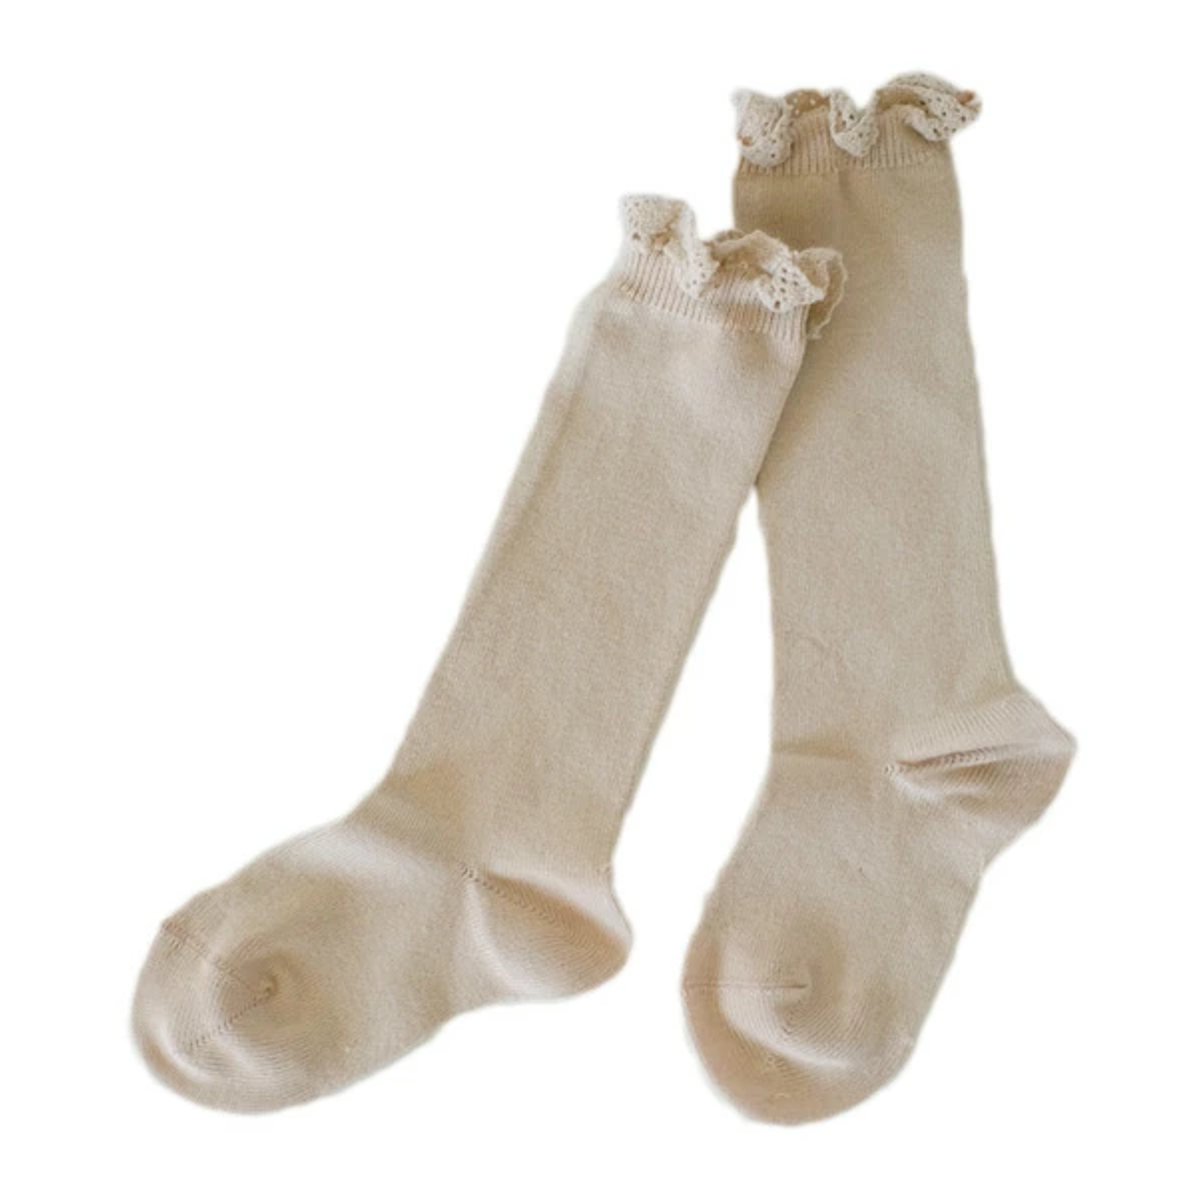 靴下 condor 子供用 5〜6歳 Knee socks with lace edging cuf...